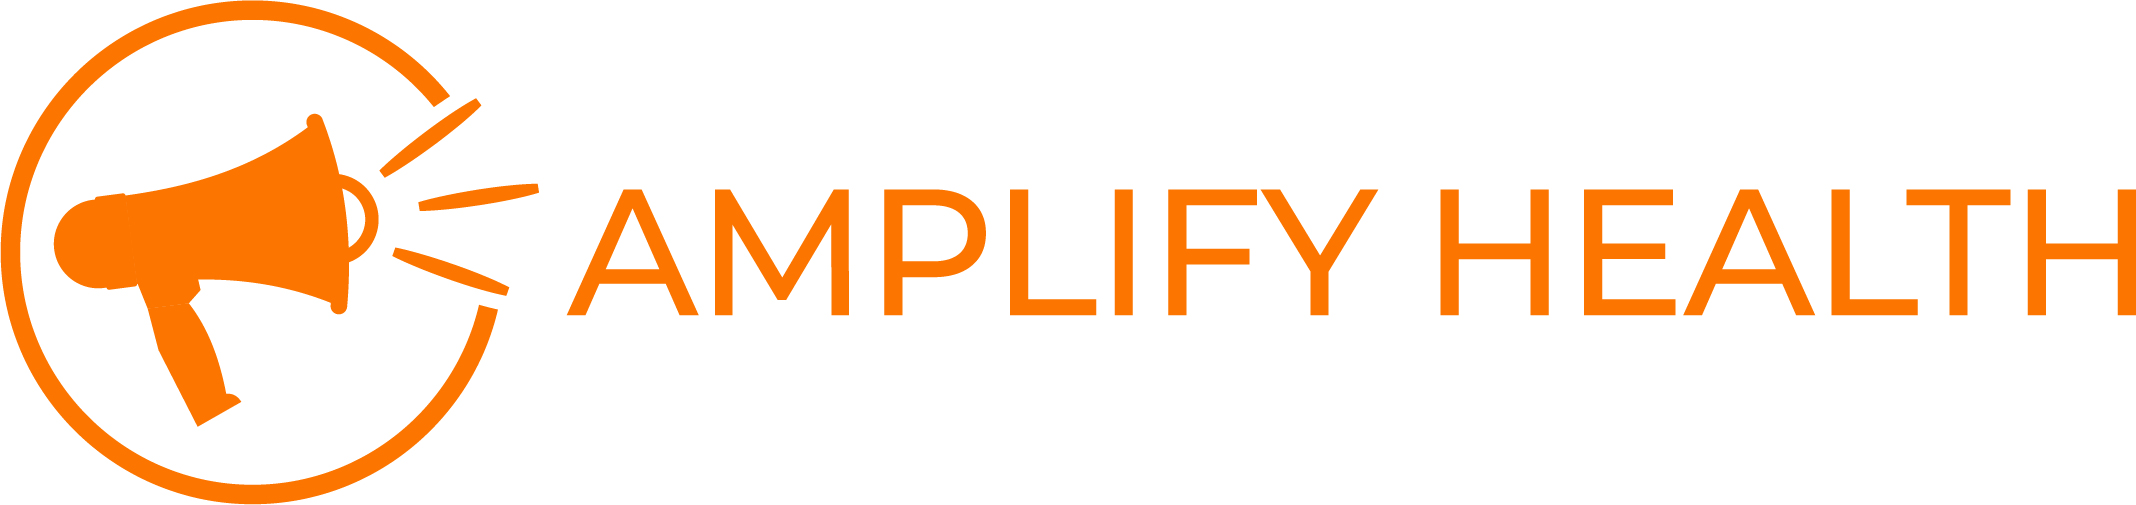 Amplify Health Logo